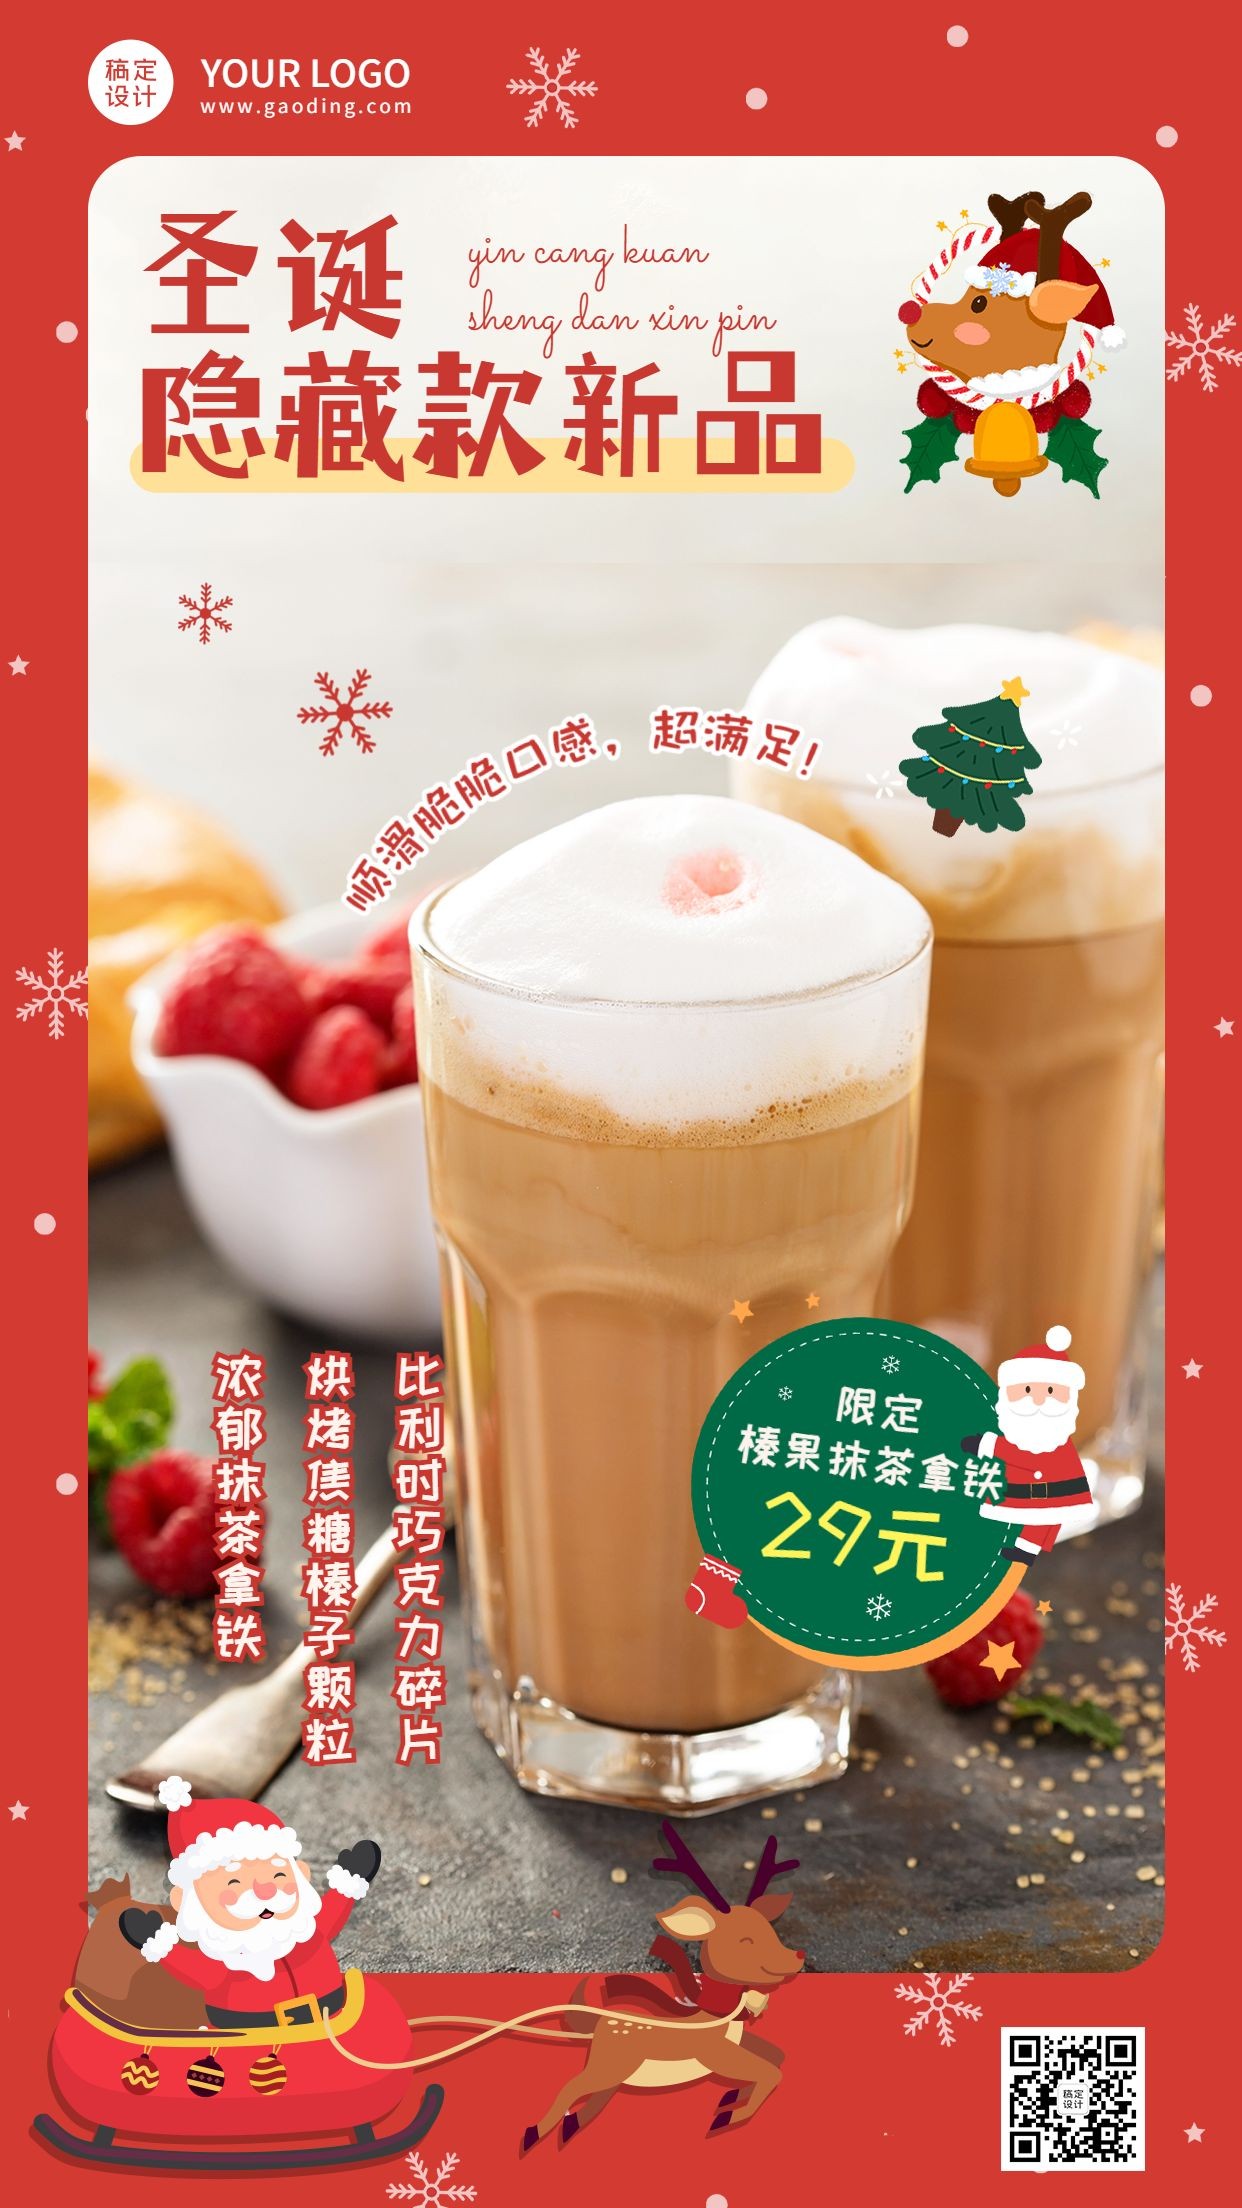 圣诞节奶茶饮品营销圣诞老人海报